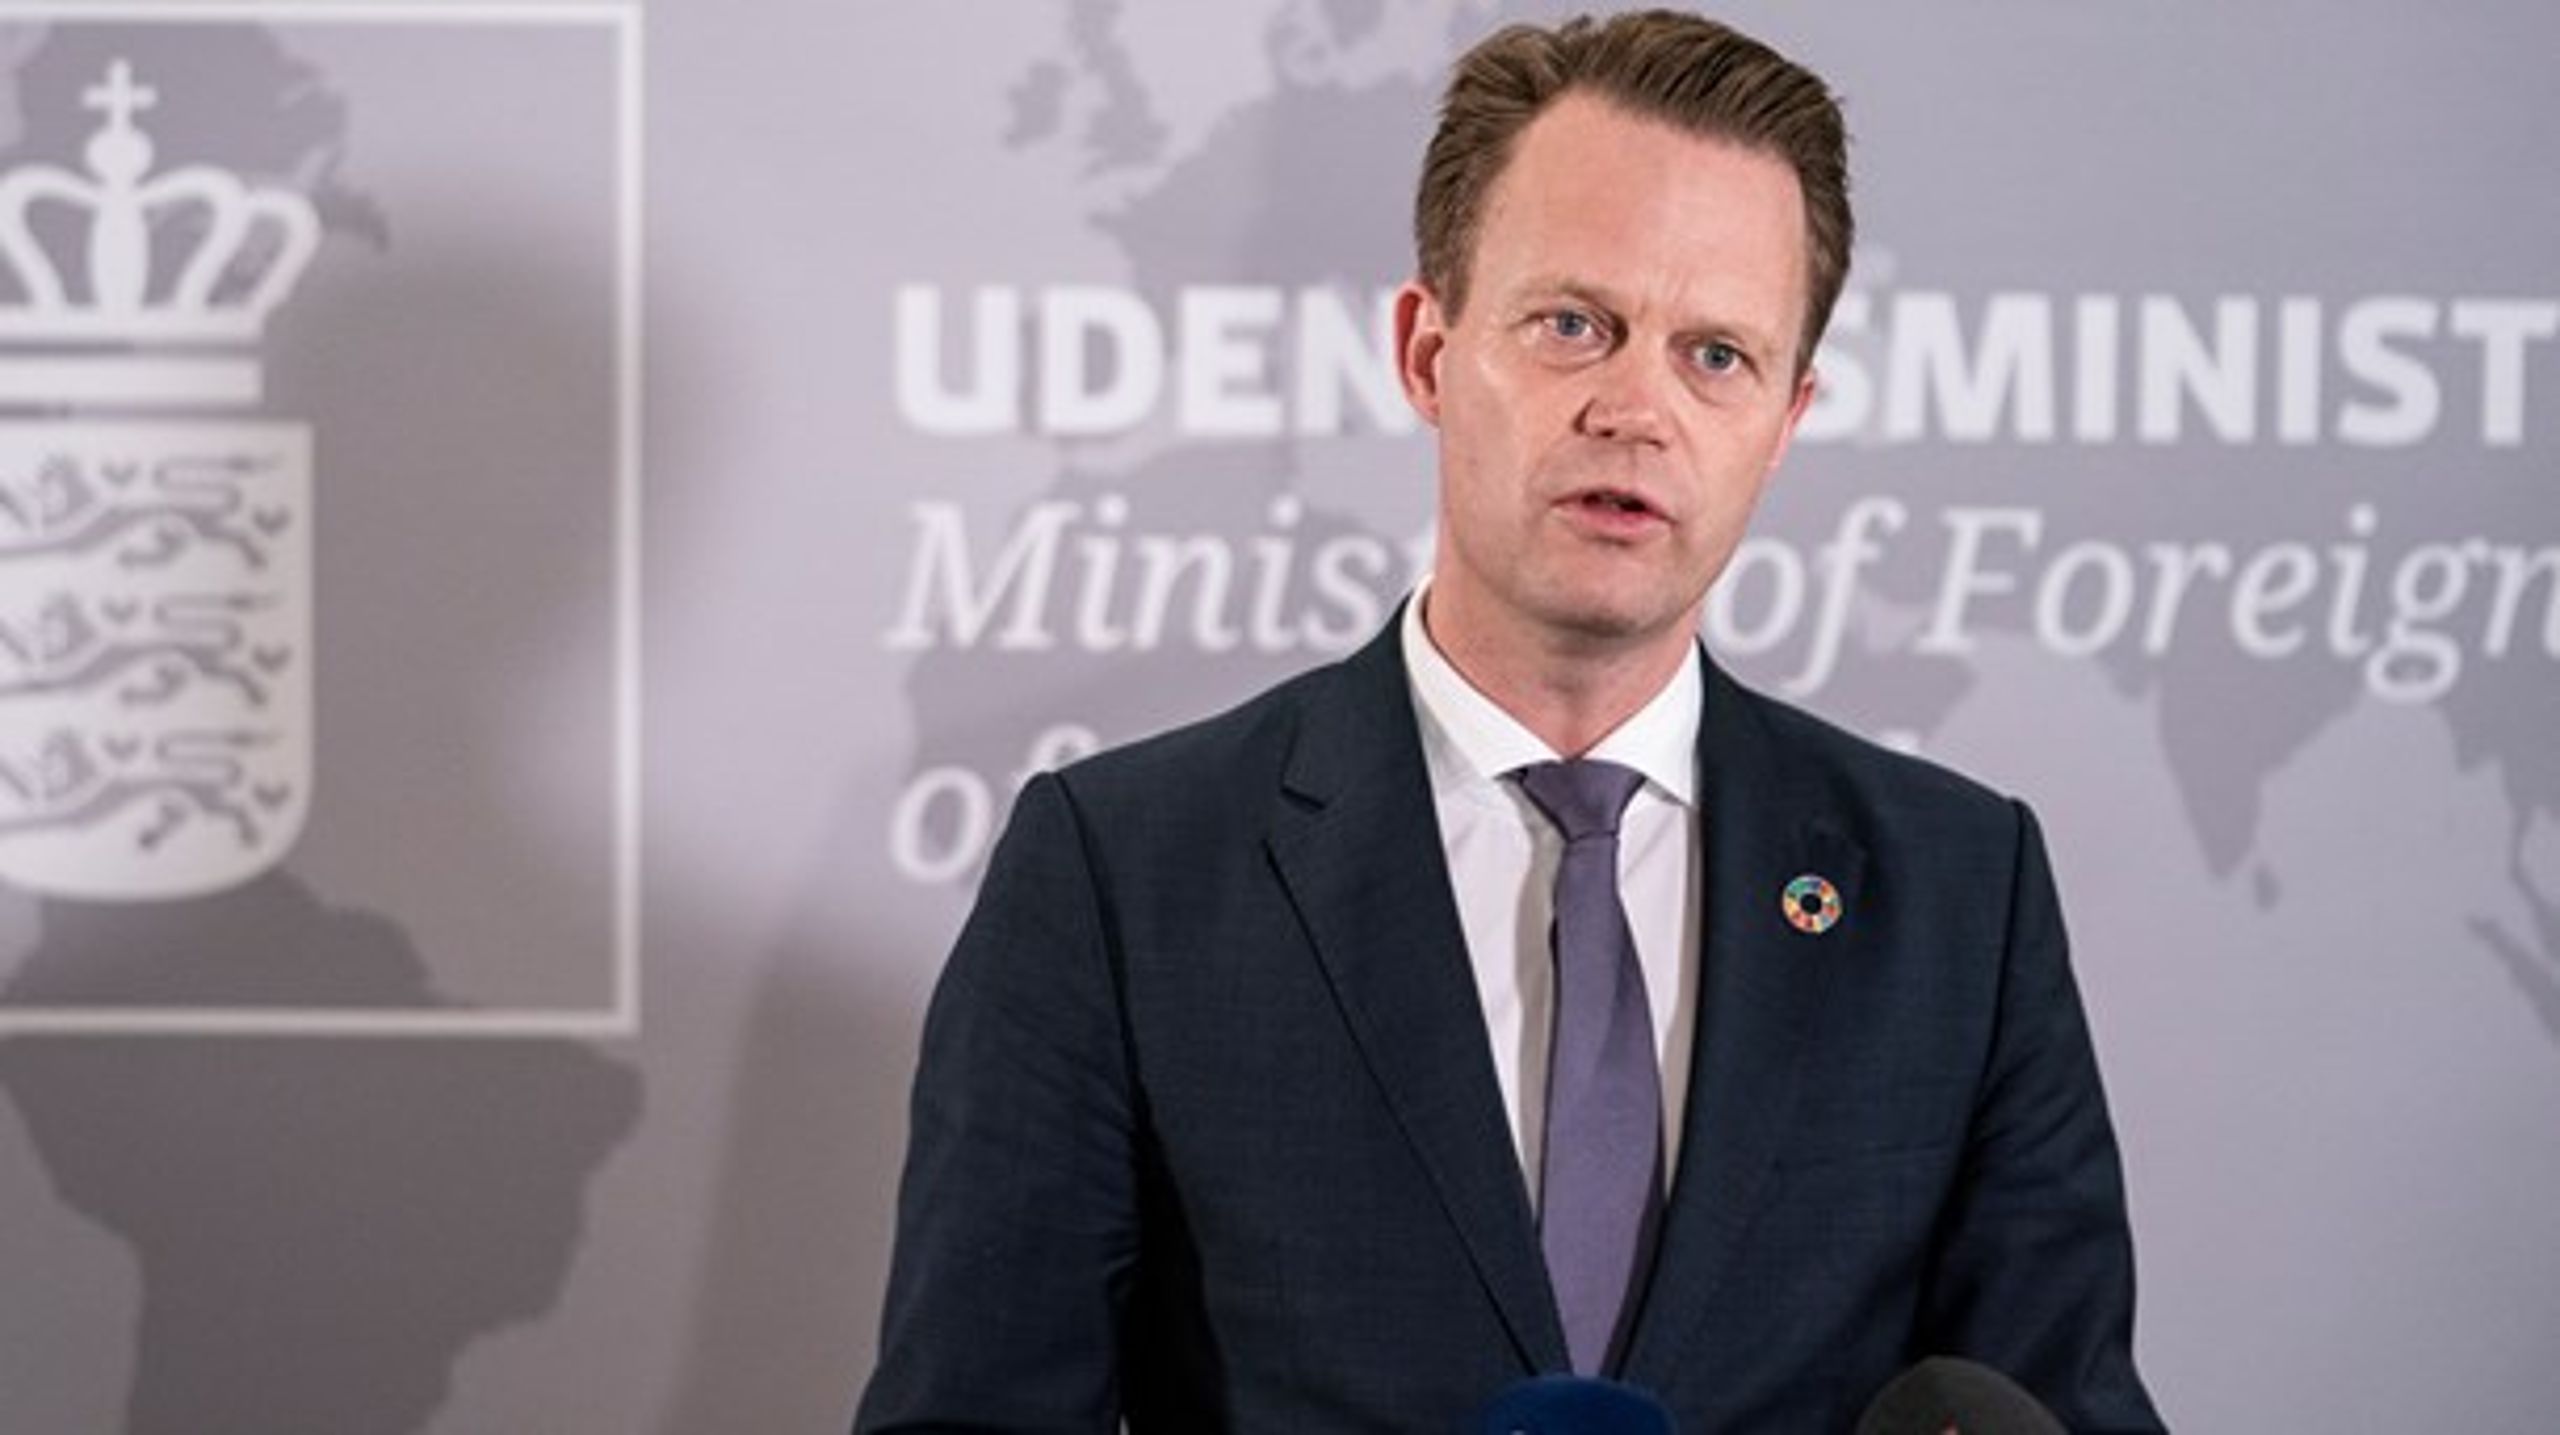 Når
ting bliver vigtige nok, er det ikke udenrigsministeren,
der tager beslutningerne, mener&nbsp;Kristian
Søby Kristensen.